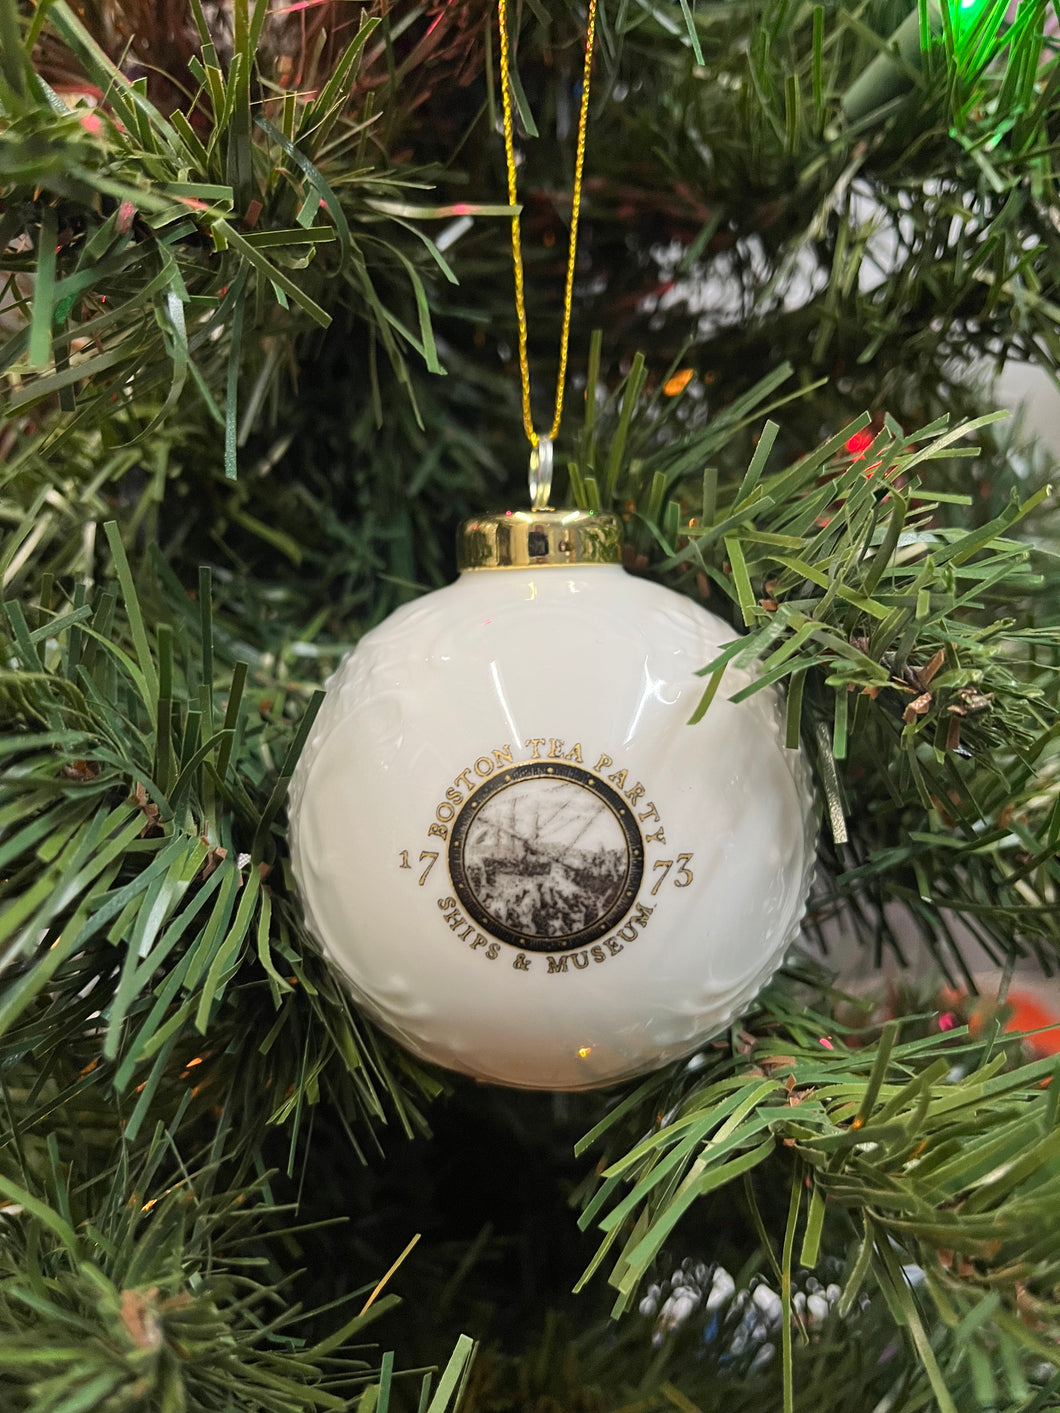 1773 White Globe Ornament